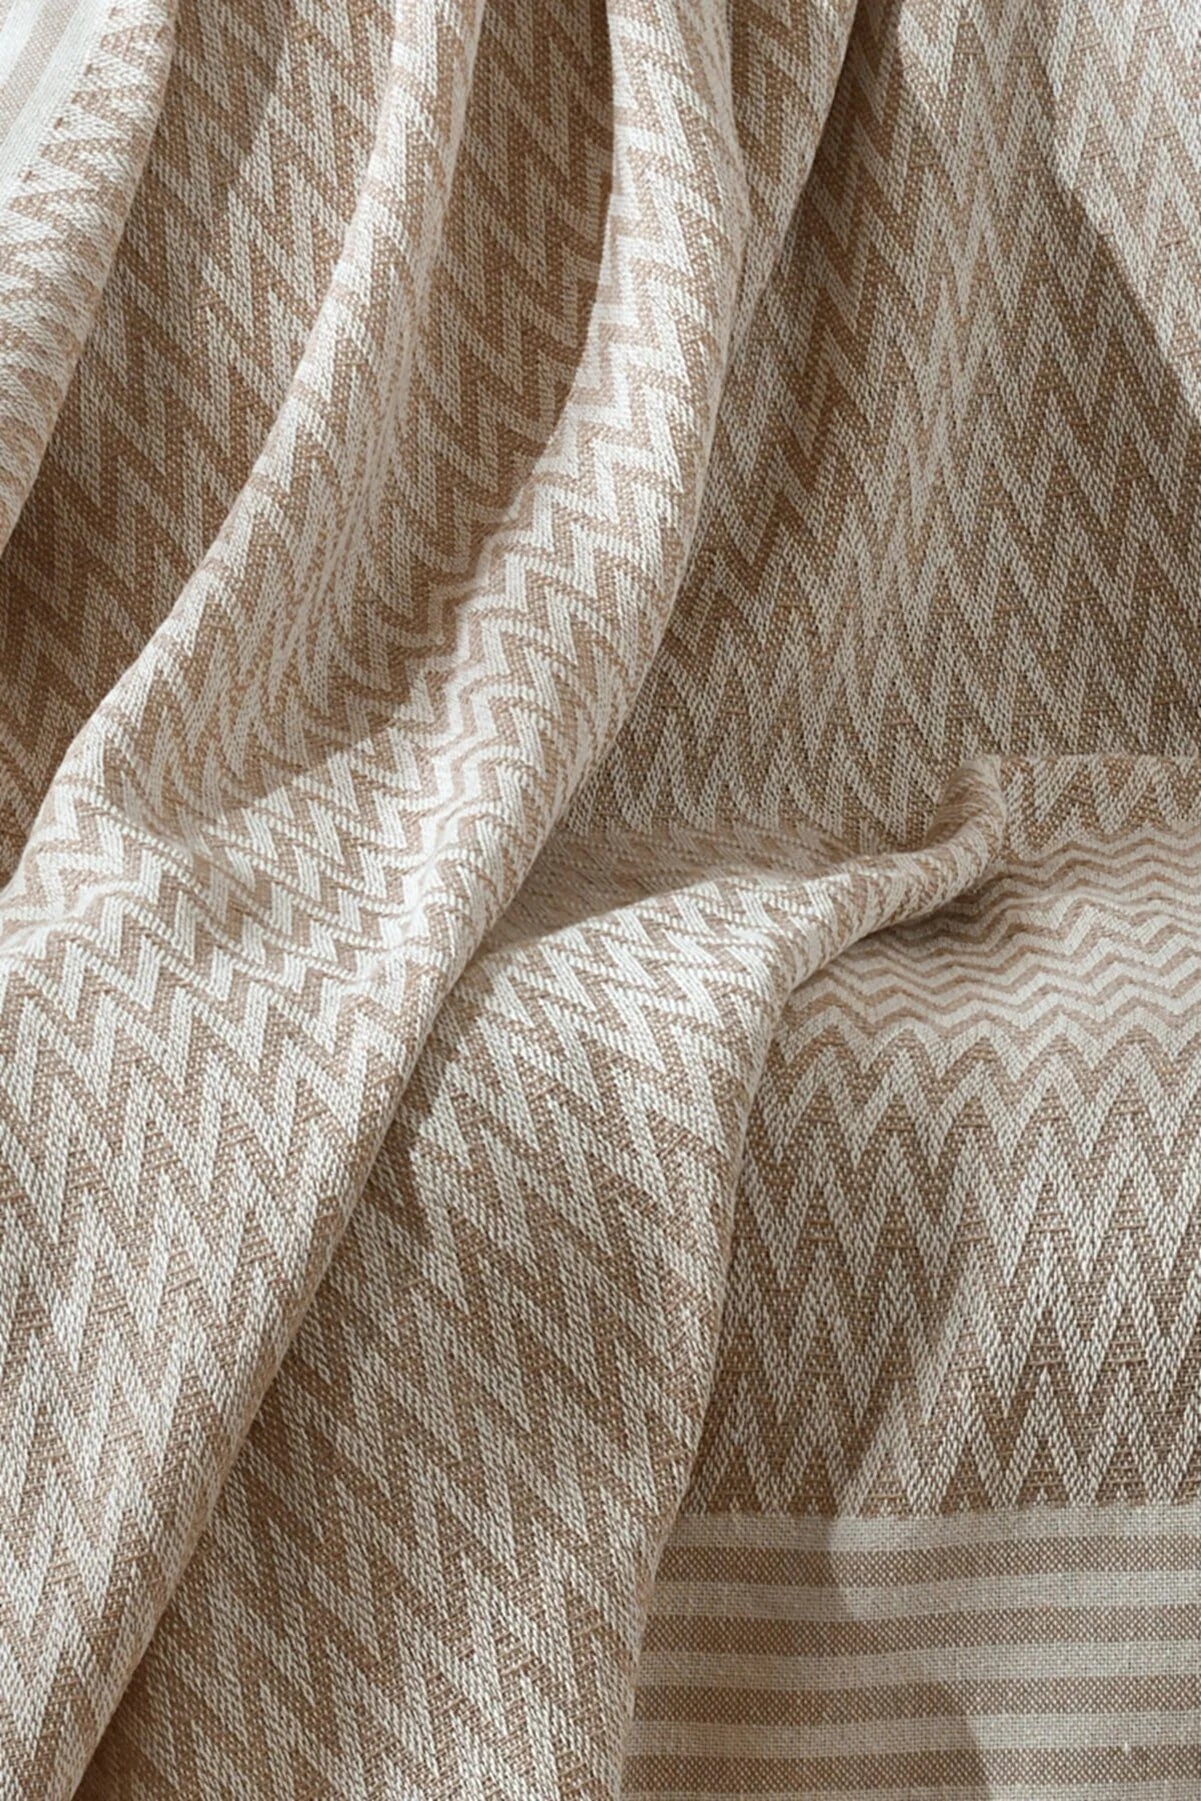 Sofa Bed Cover Special Non-Slip Design Multi-Purpose Cover Zigzag Beige